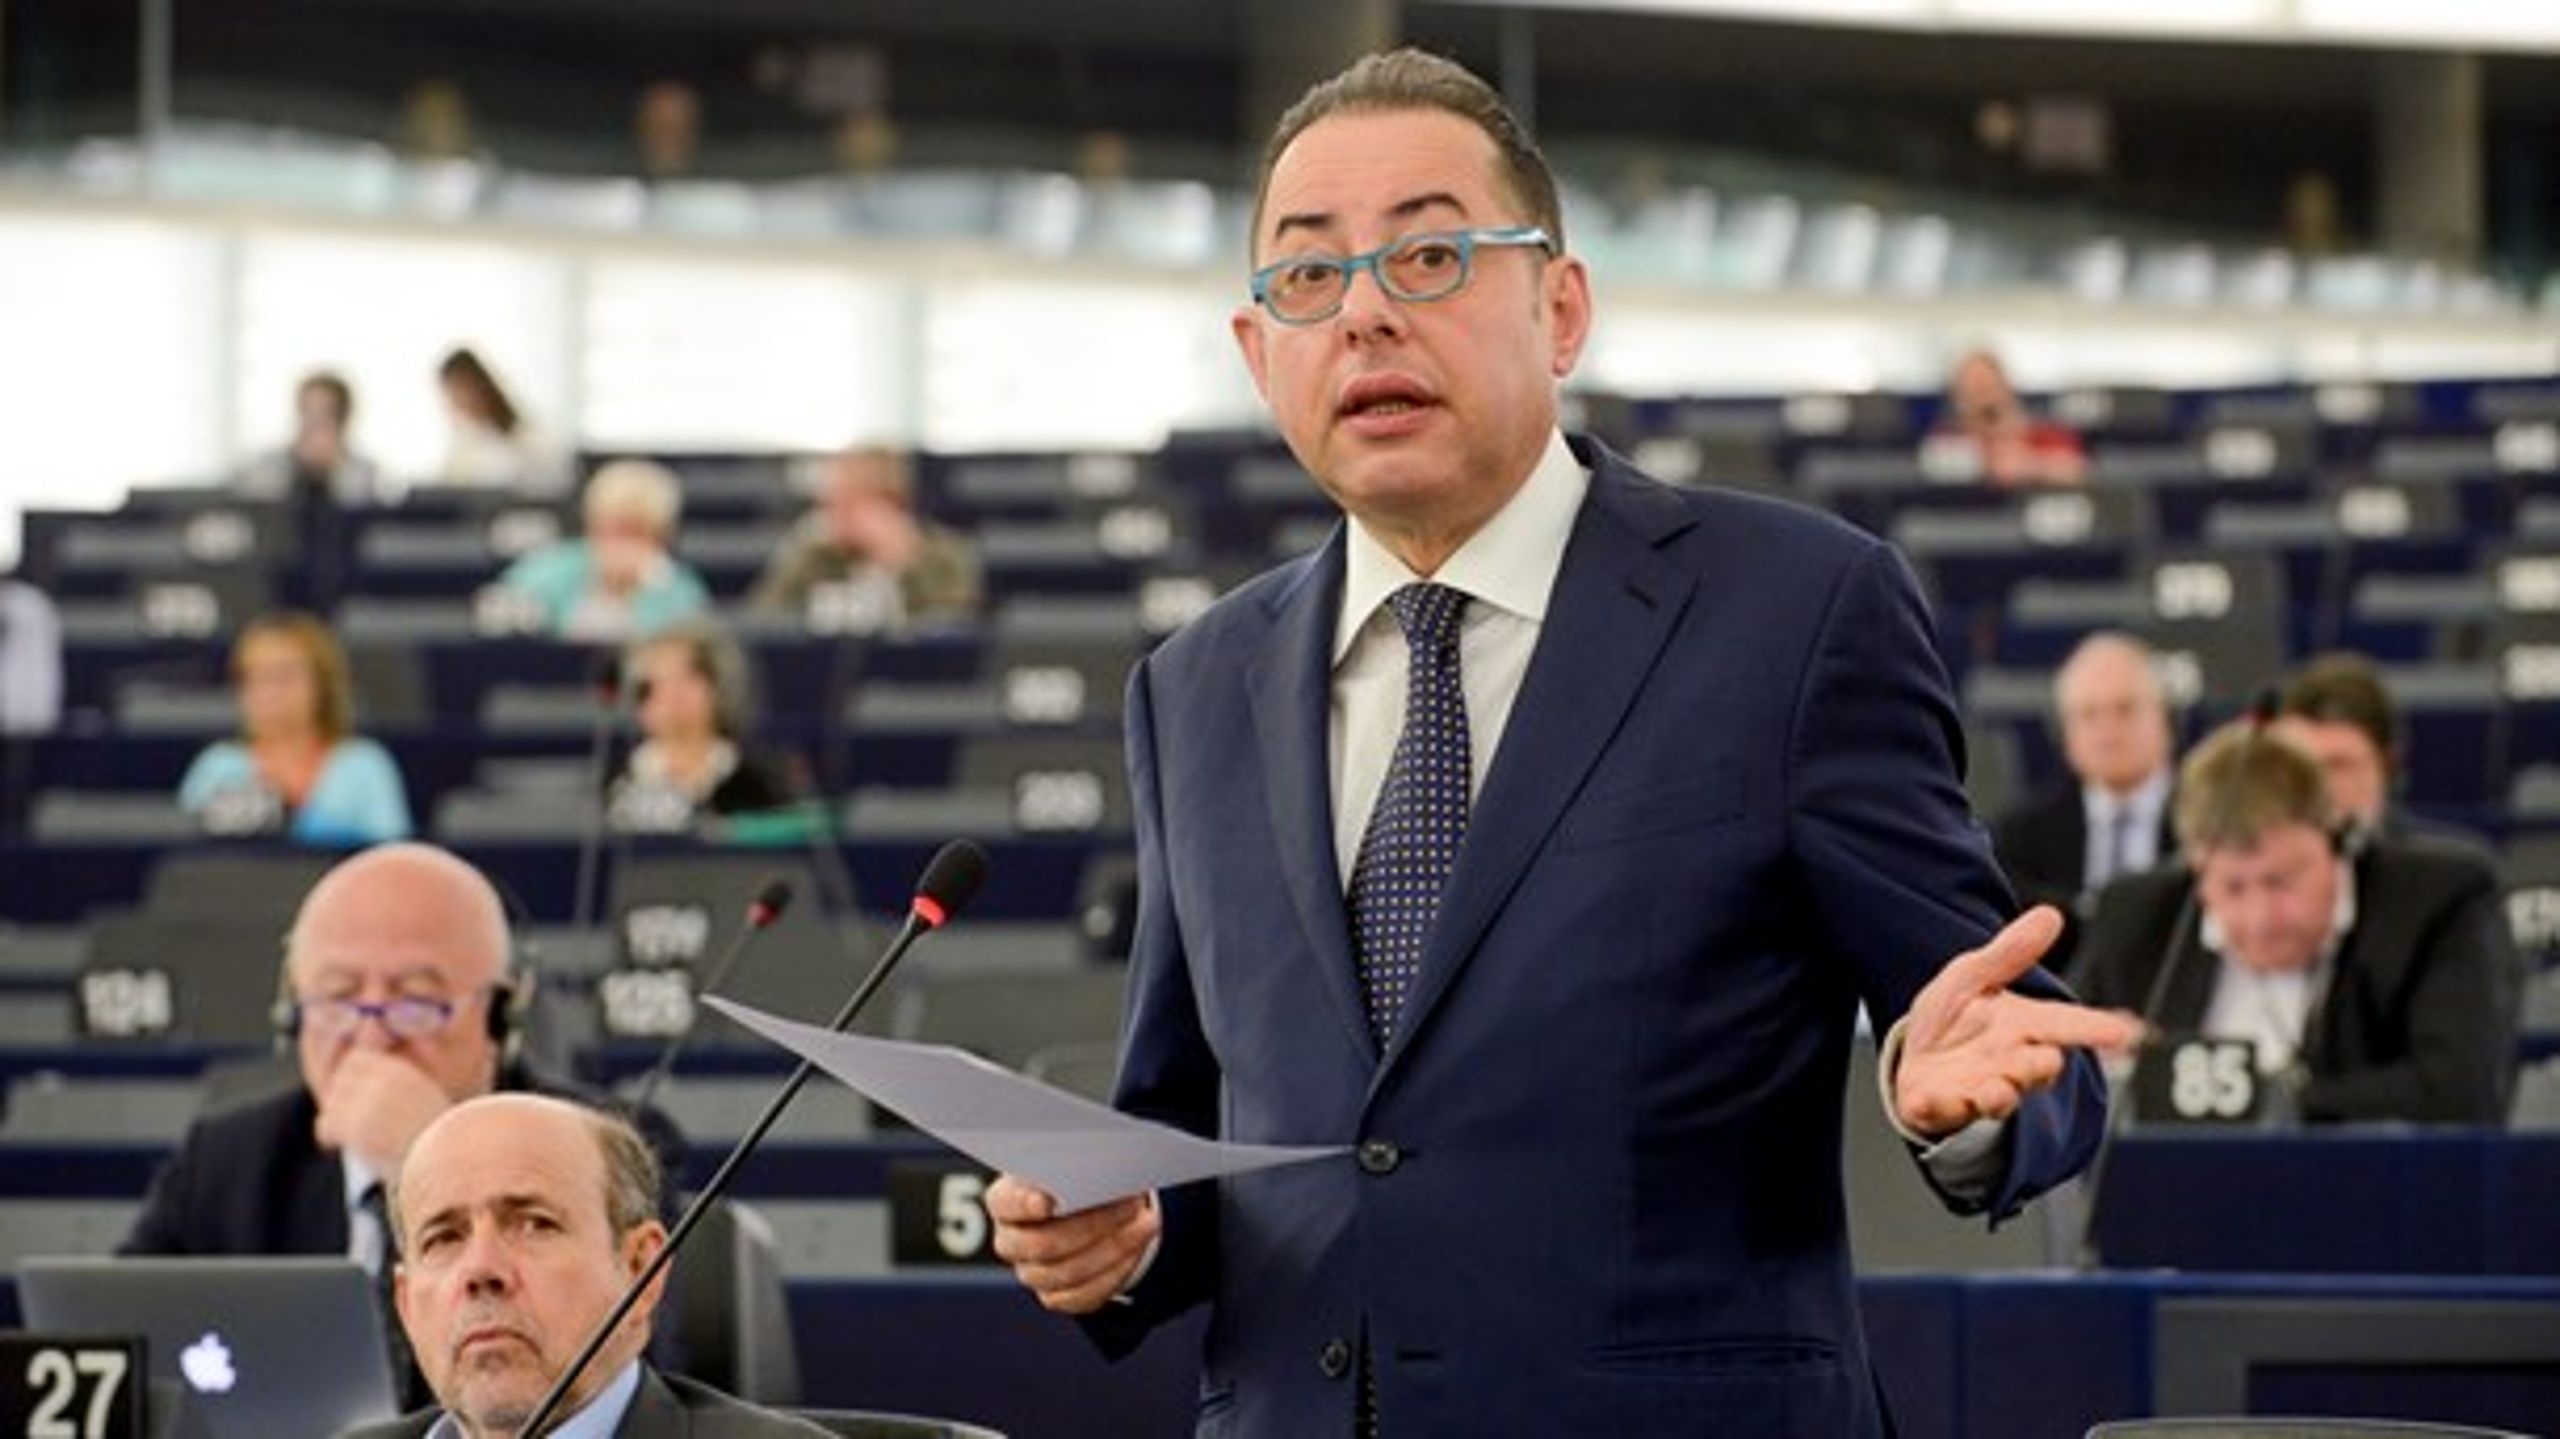 Formanden for den socialdemokratiske S&amp;D-gruppe i Europa-Parlamentet, Gianni Pittella,&nbsp;mener, at forhandlingerne om tyrkisk optagelse i EU skal lægges på is. Parlamentarikerne stemmer om spørgsmålet torsdag.